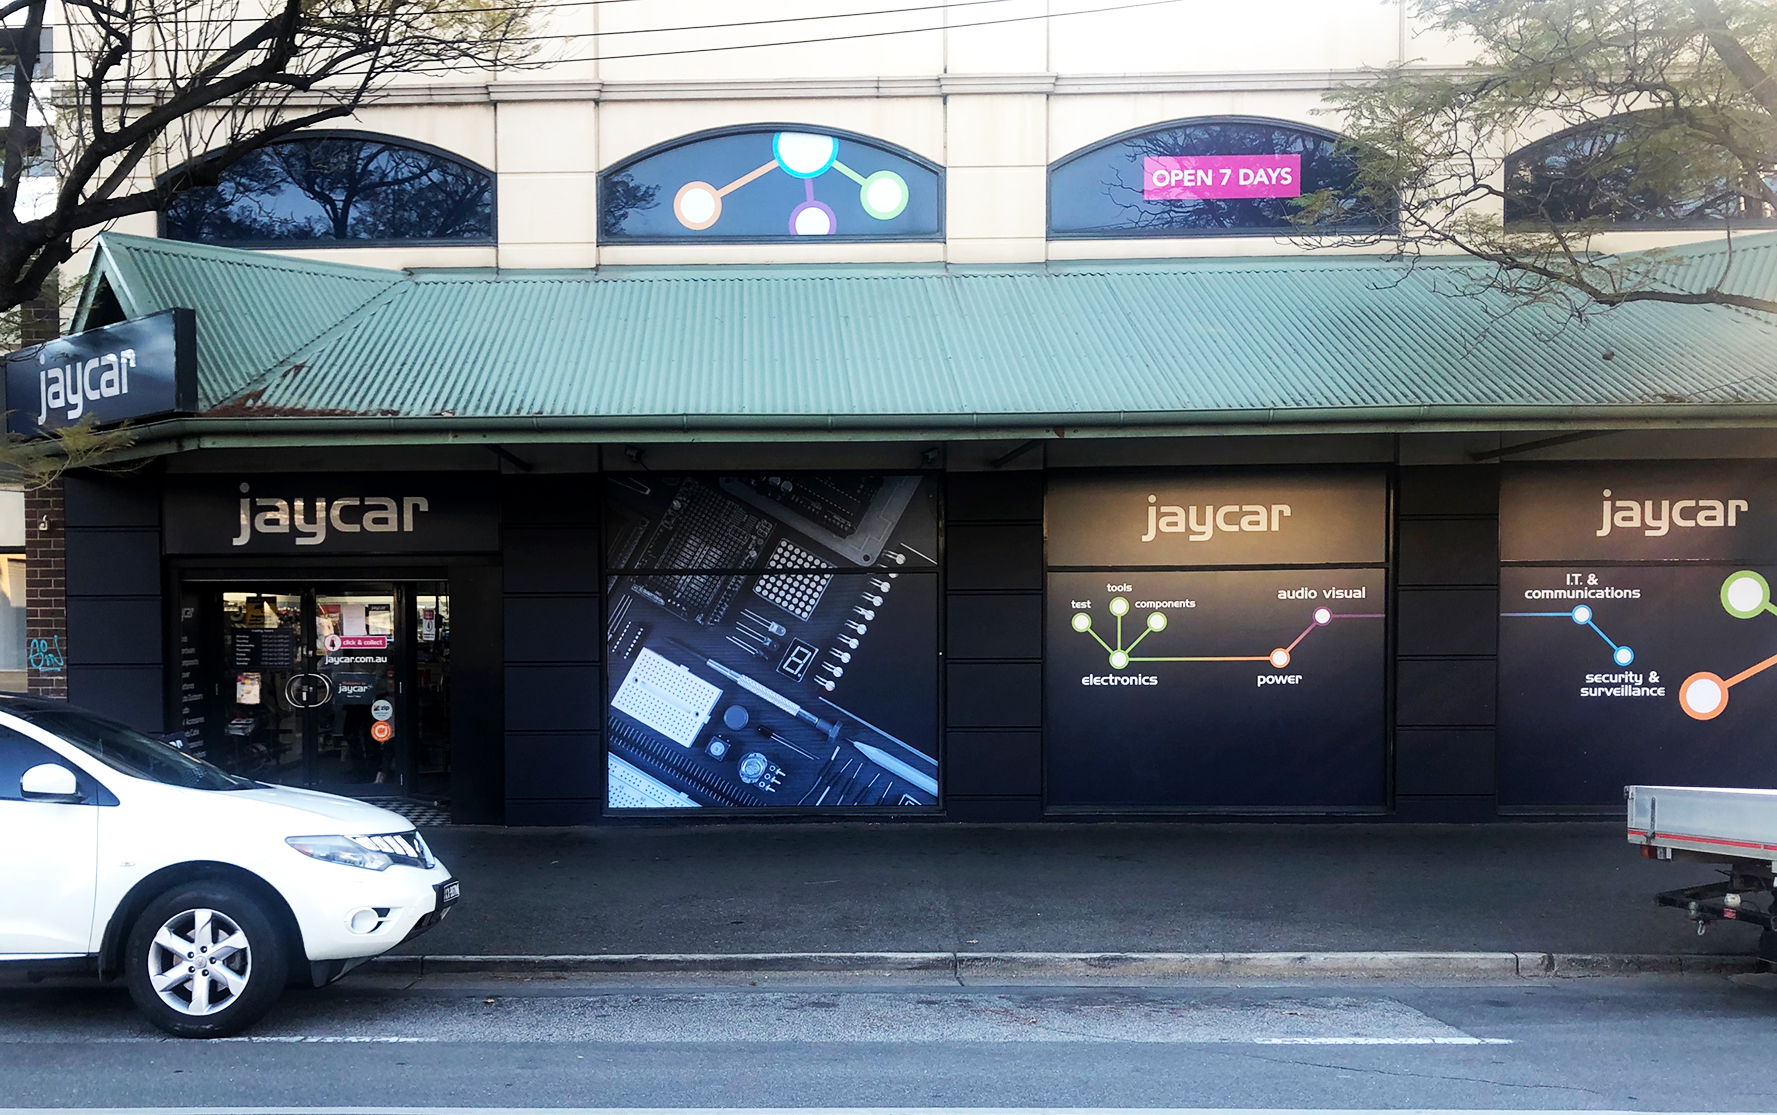 Jaycar Electronics Adelaide City Adelaide (08) 8221 5191